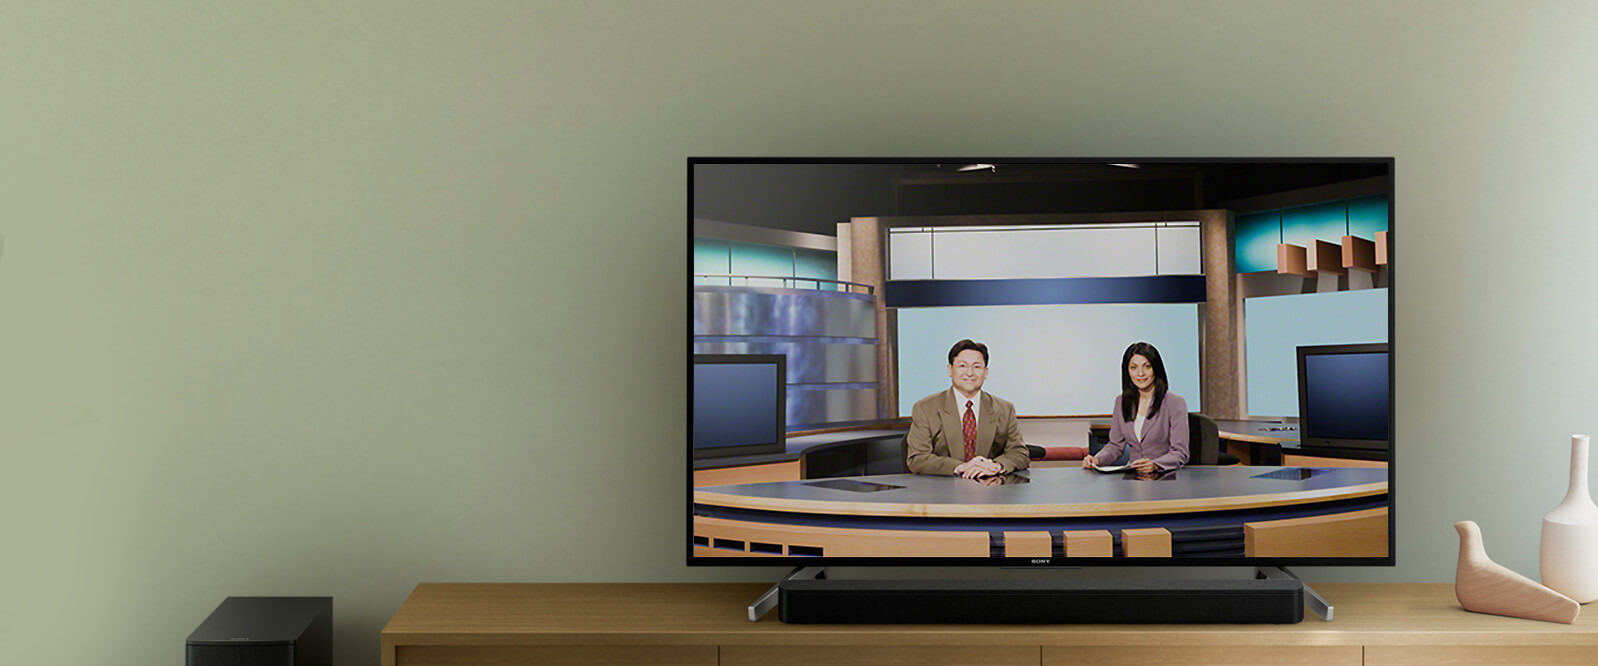 针对语音信息进行优化，可清晰听到电视节目的语音内容。